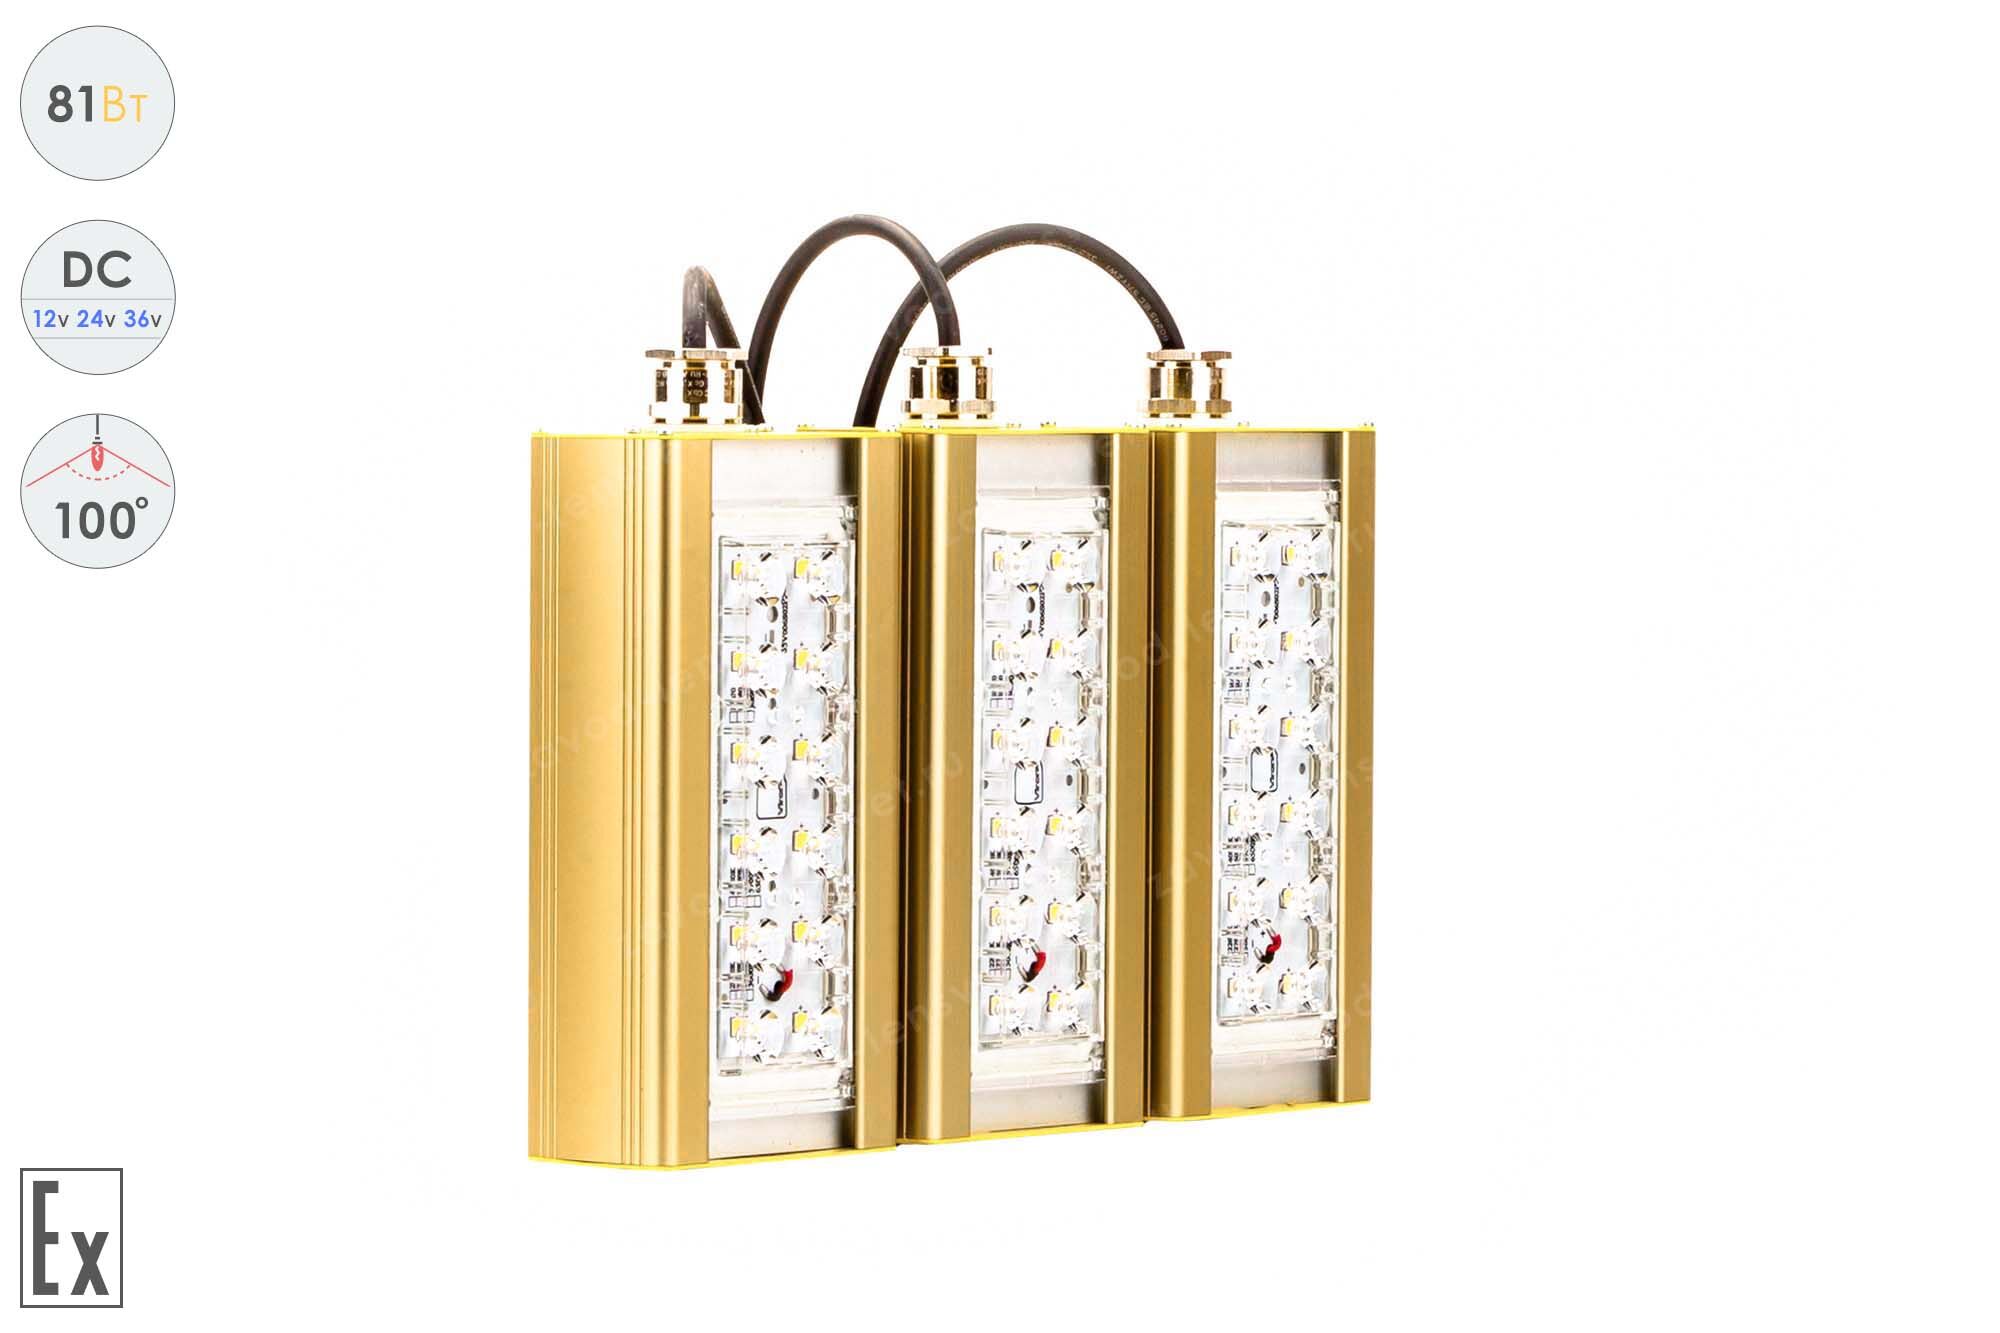 Светодиодный светильник Низковольтный Прожектор Взрывозащищенный GOLD, консоль K-3, 81 Вт, 100°